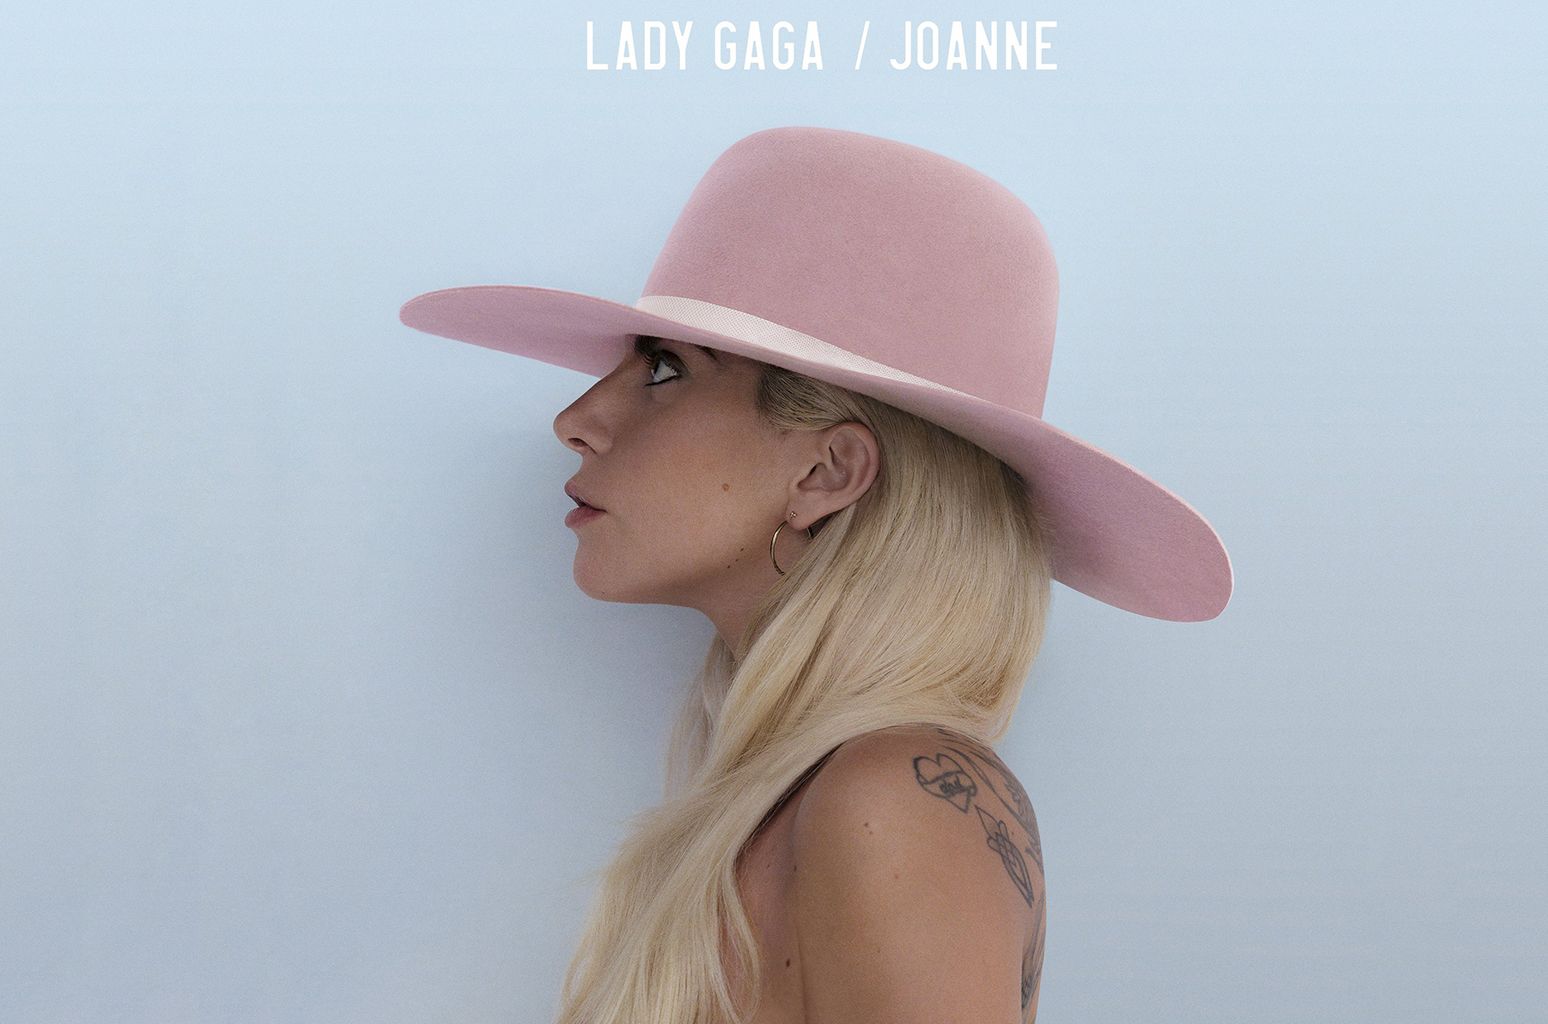 Il nuovo cd di Lady Gaga è uscito illegalmente sul web